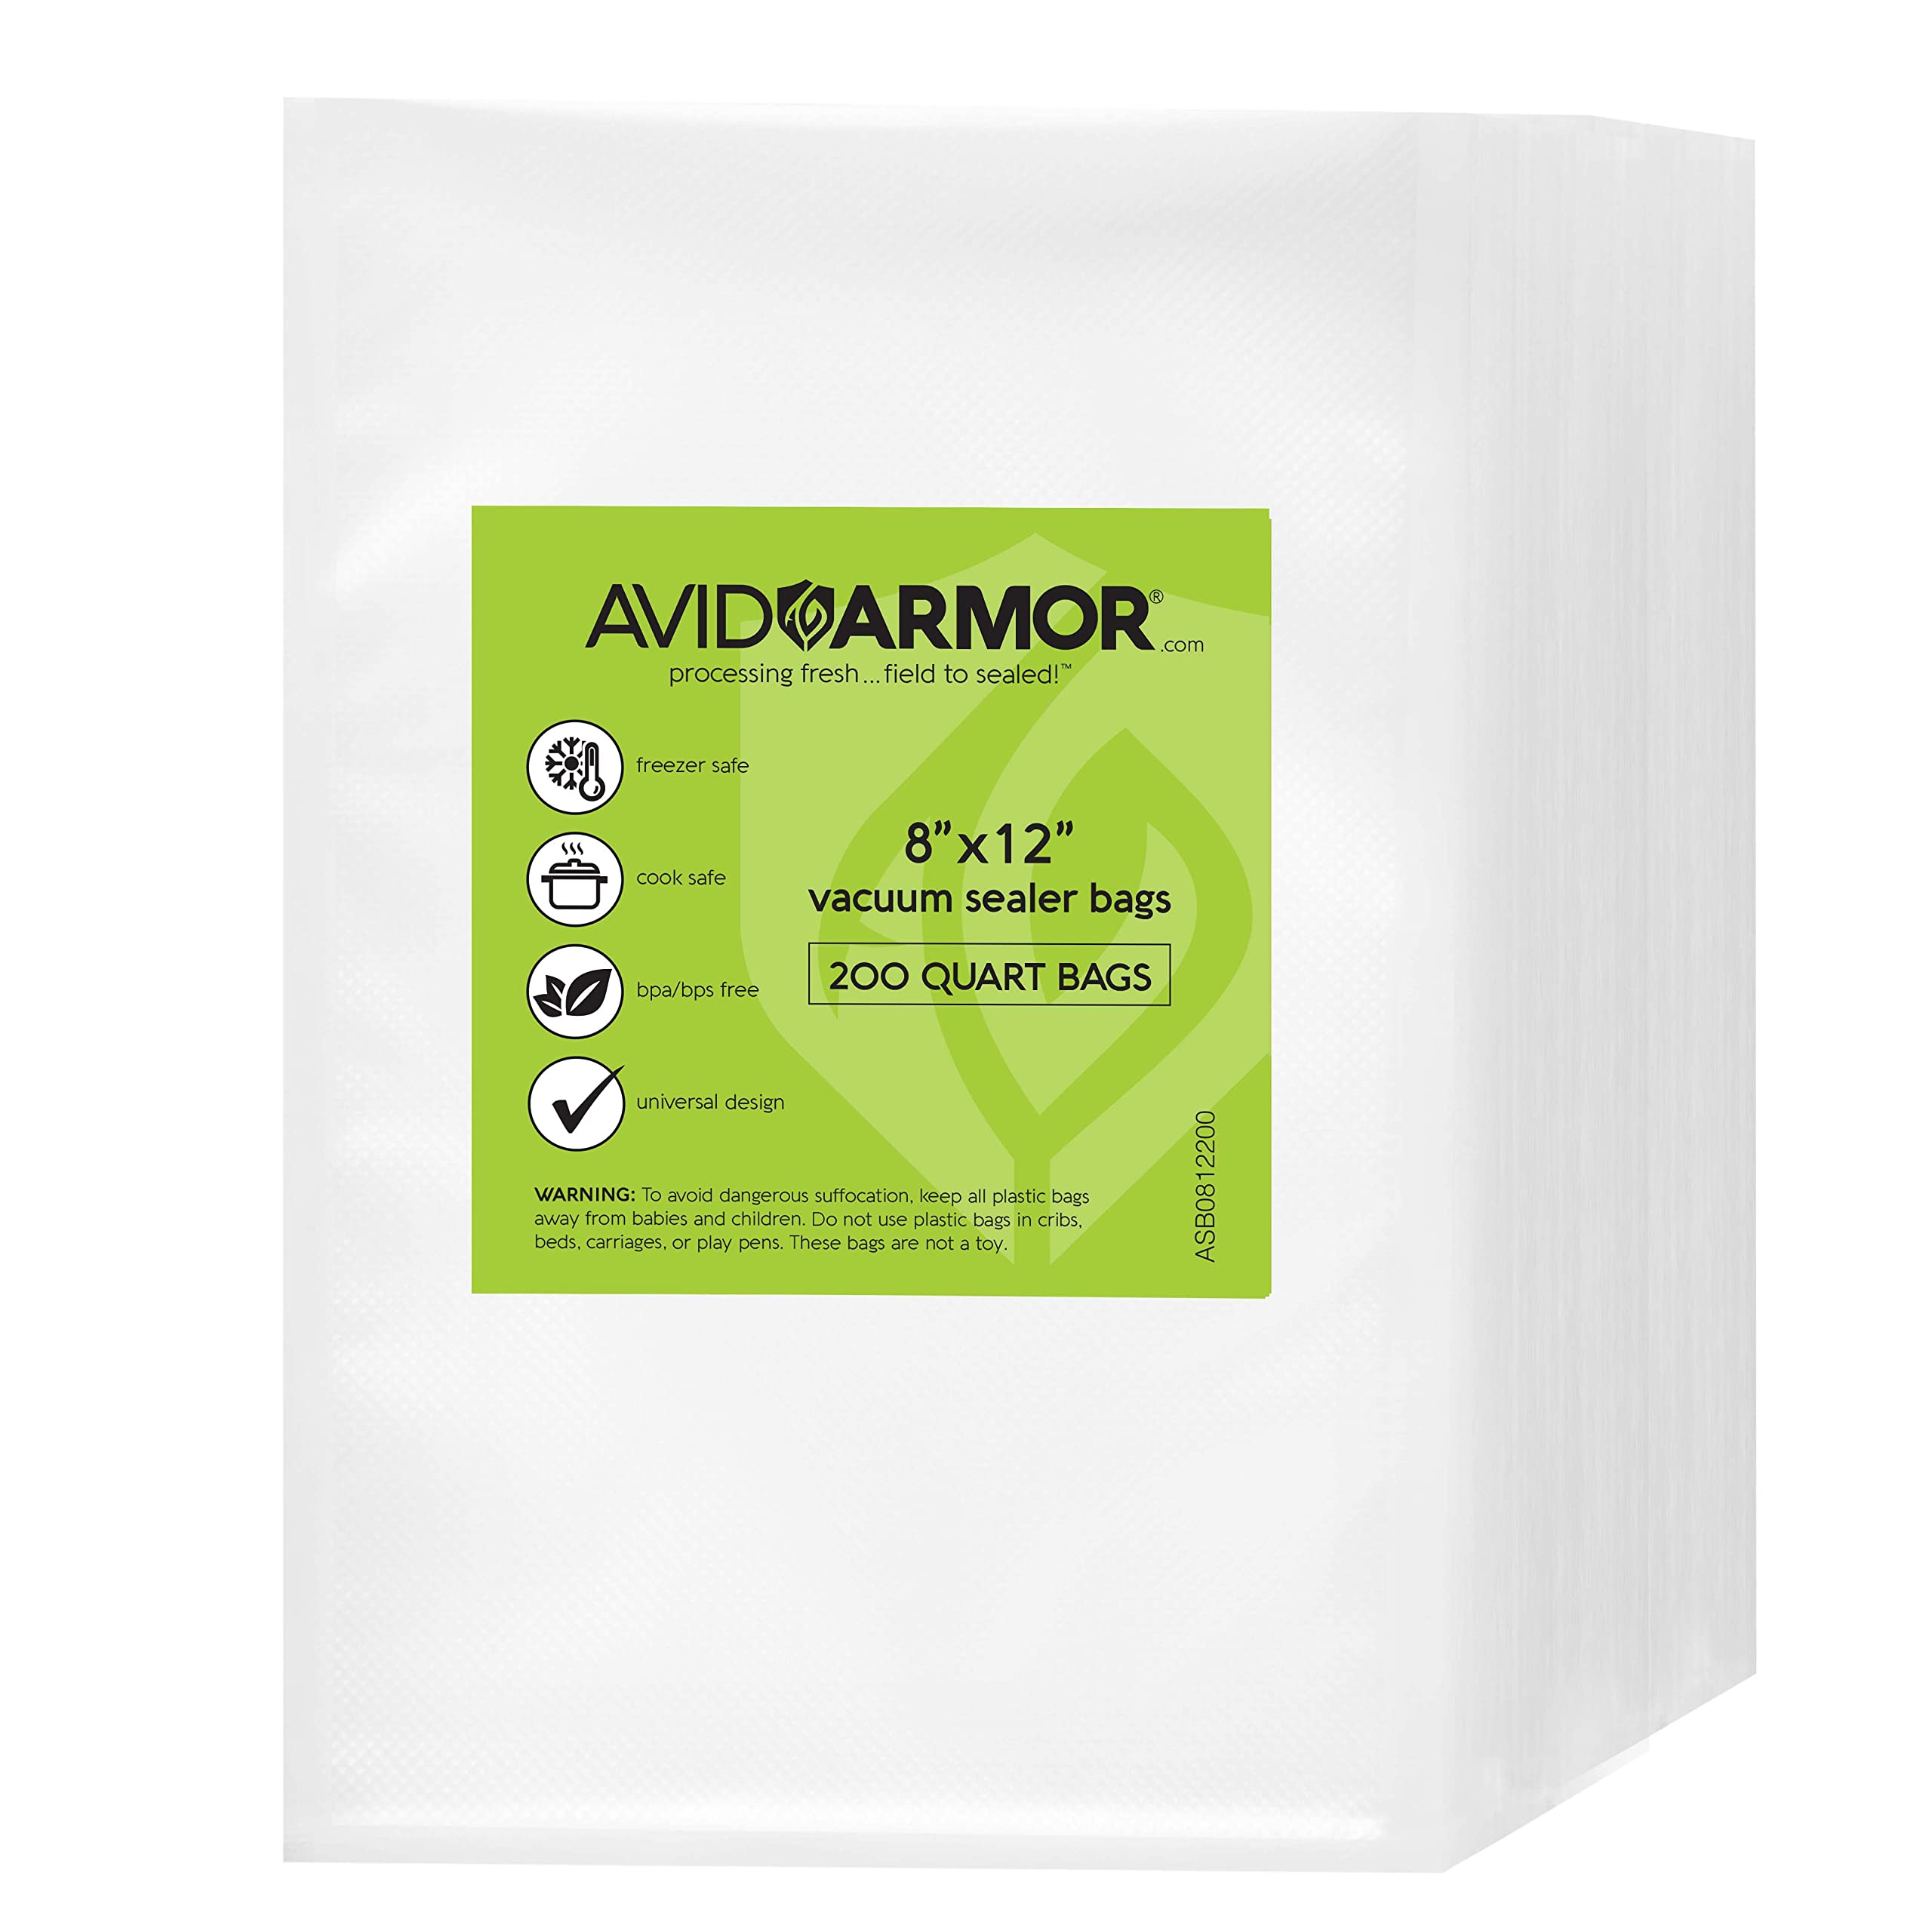 Avid Armor® 8 x 25' Vacuum Sealer Bag Rolls - 4 Count